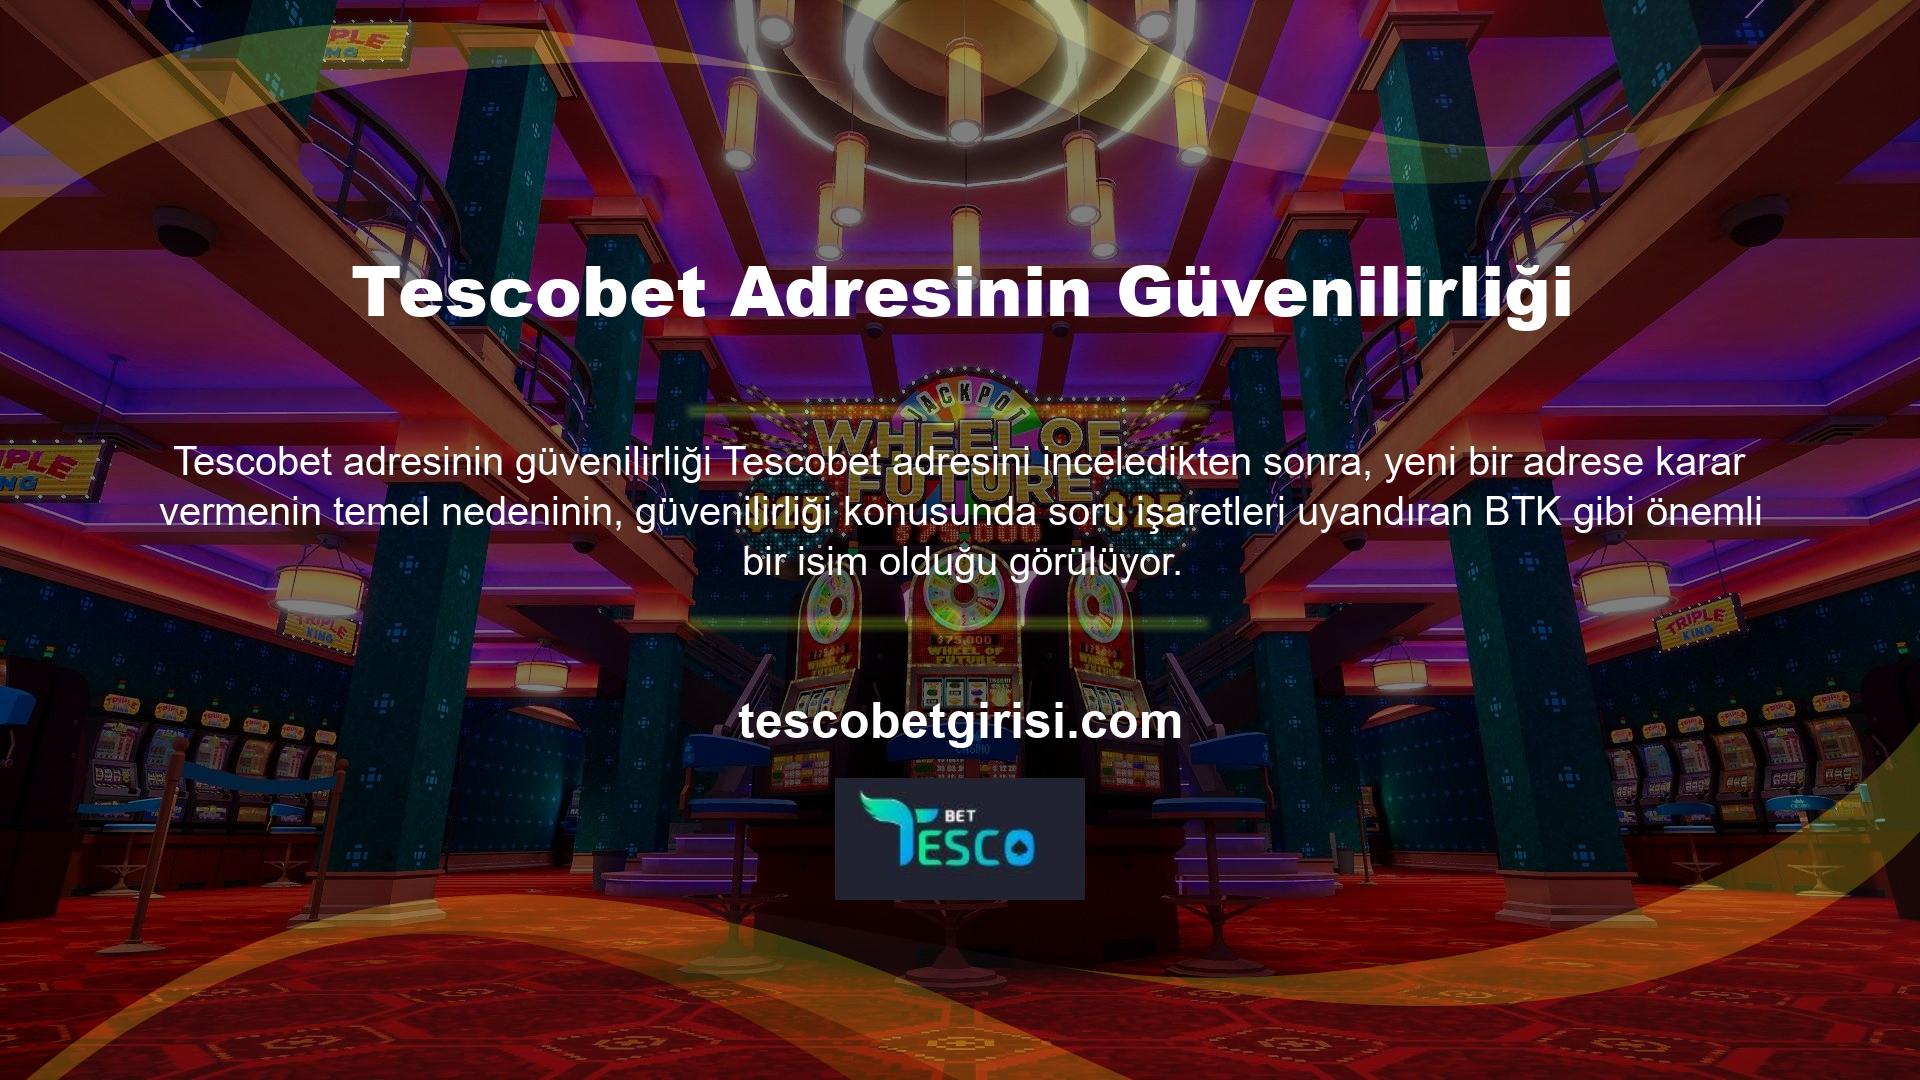 Tescobet, yeni adres güvenilirliğine sahip bir web sitesidir